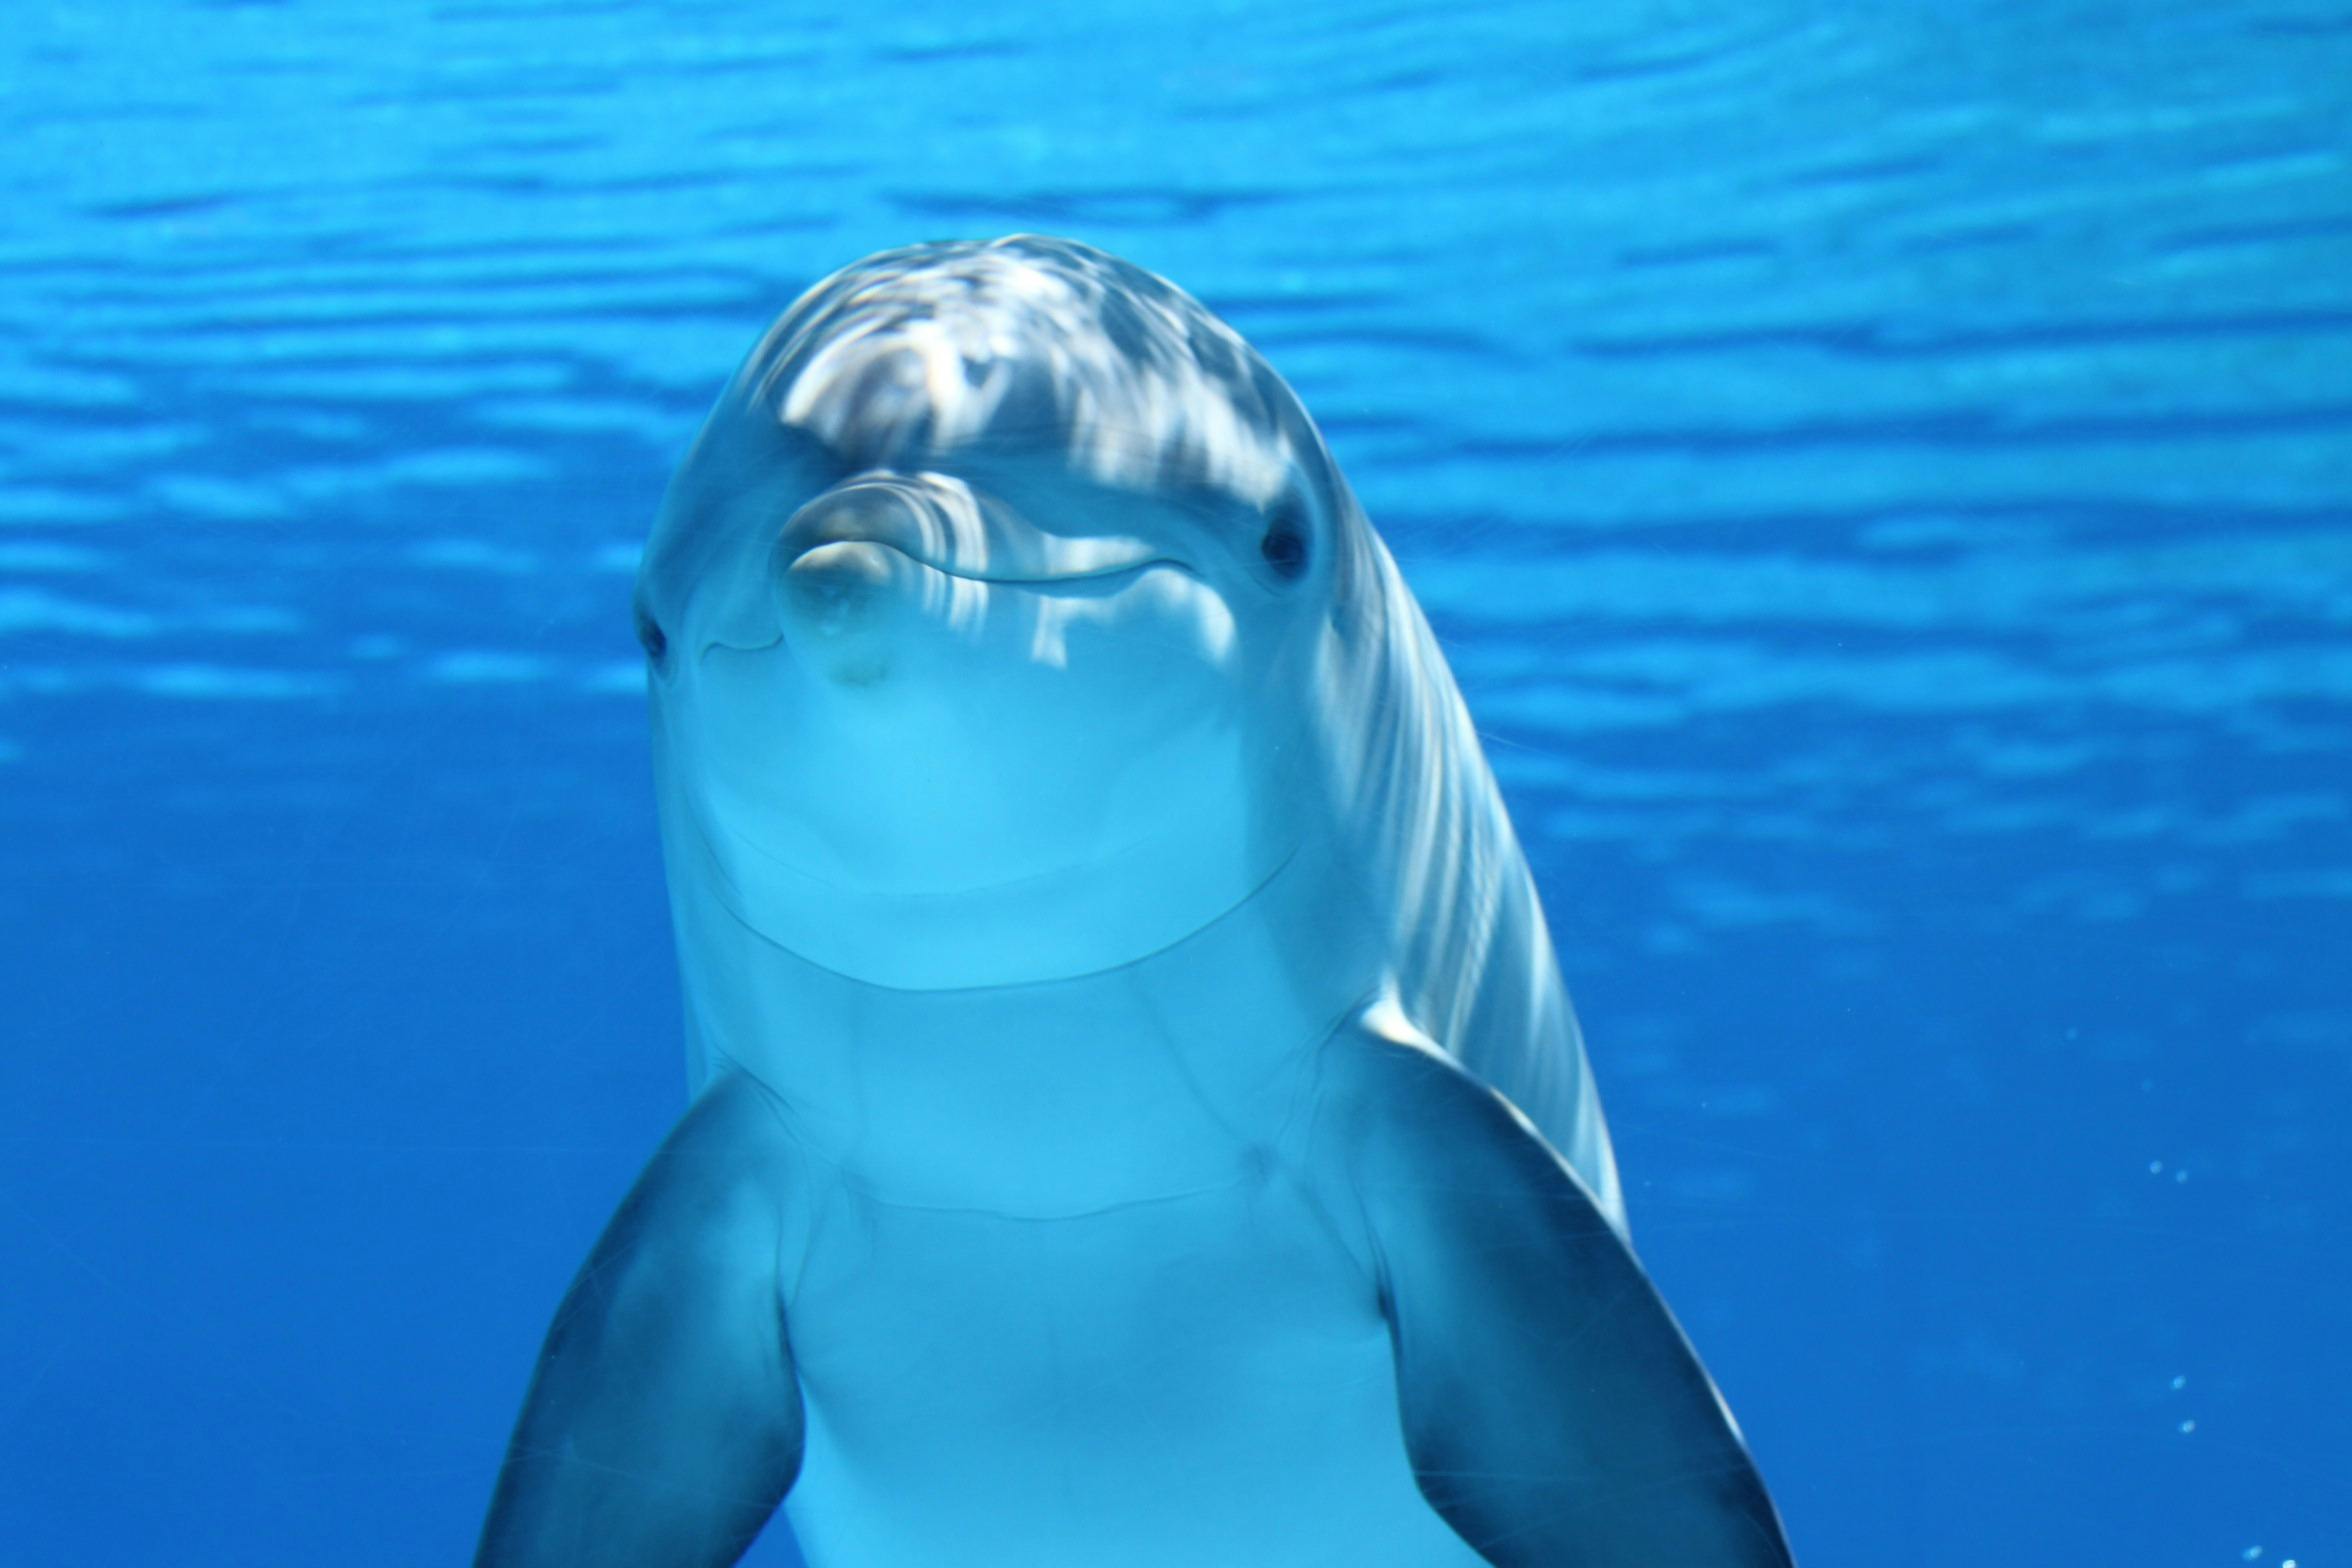 Pexels (https://images.pexels.com/photos/64219/dolphin-marine-mammals-water-sea-64219.jpeg)